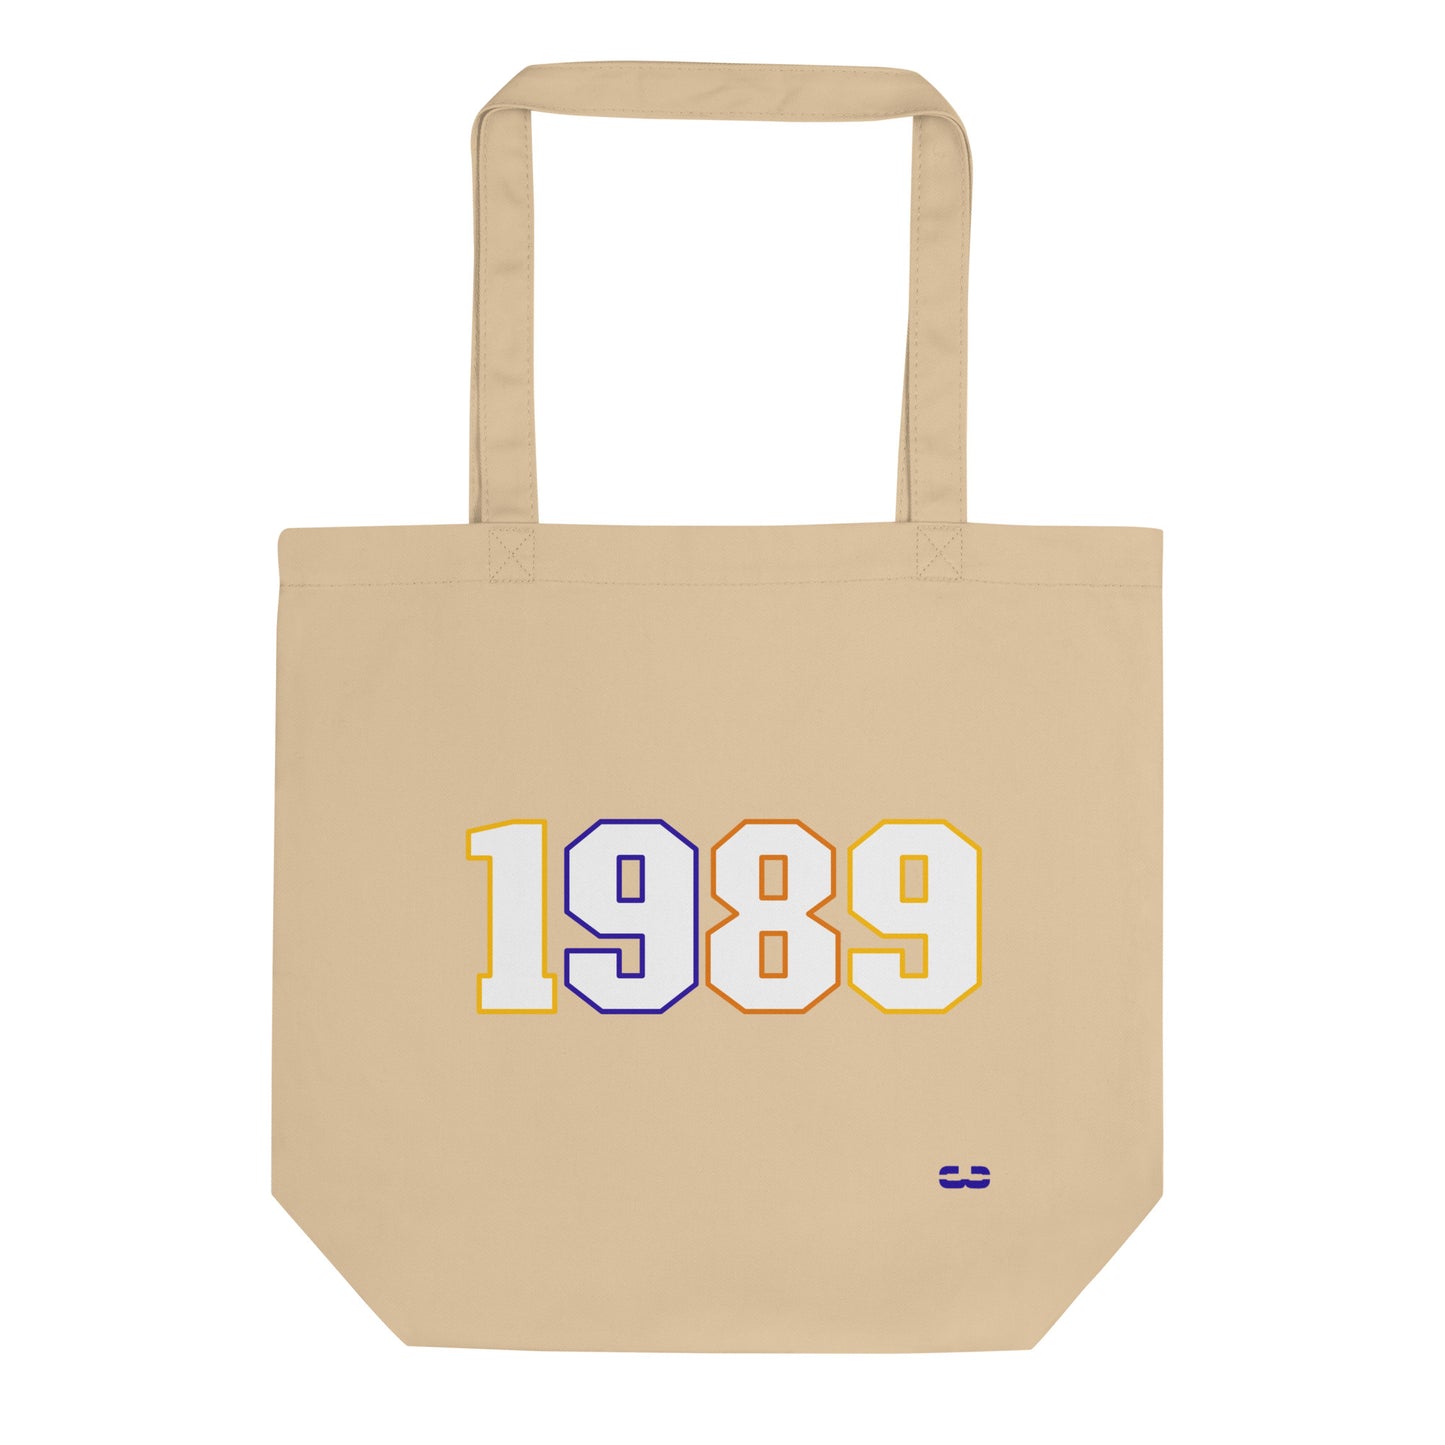 1989 Tote Bag